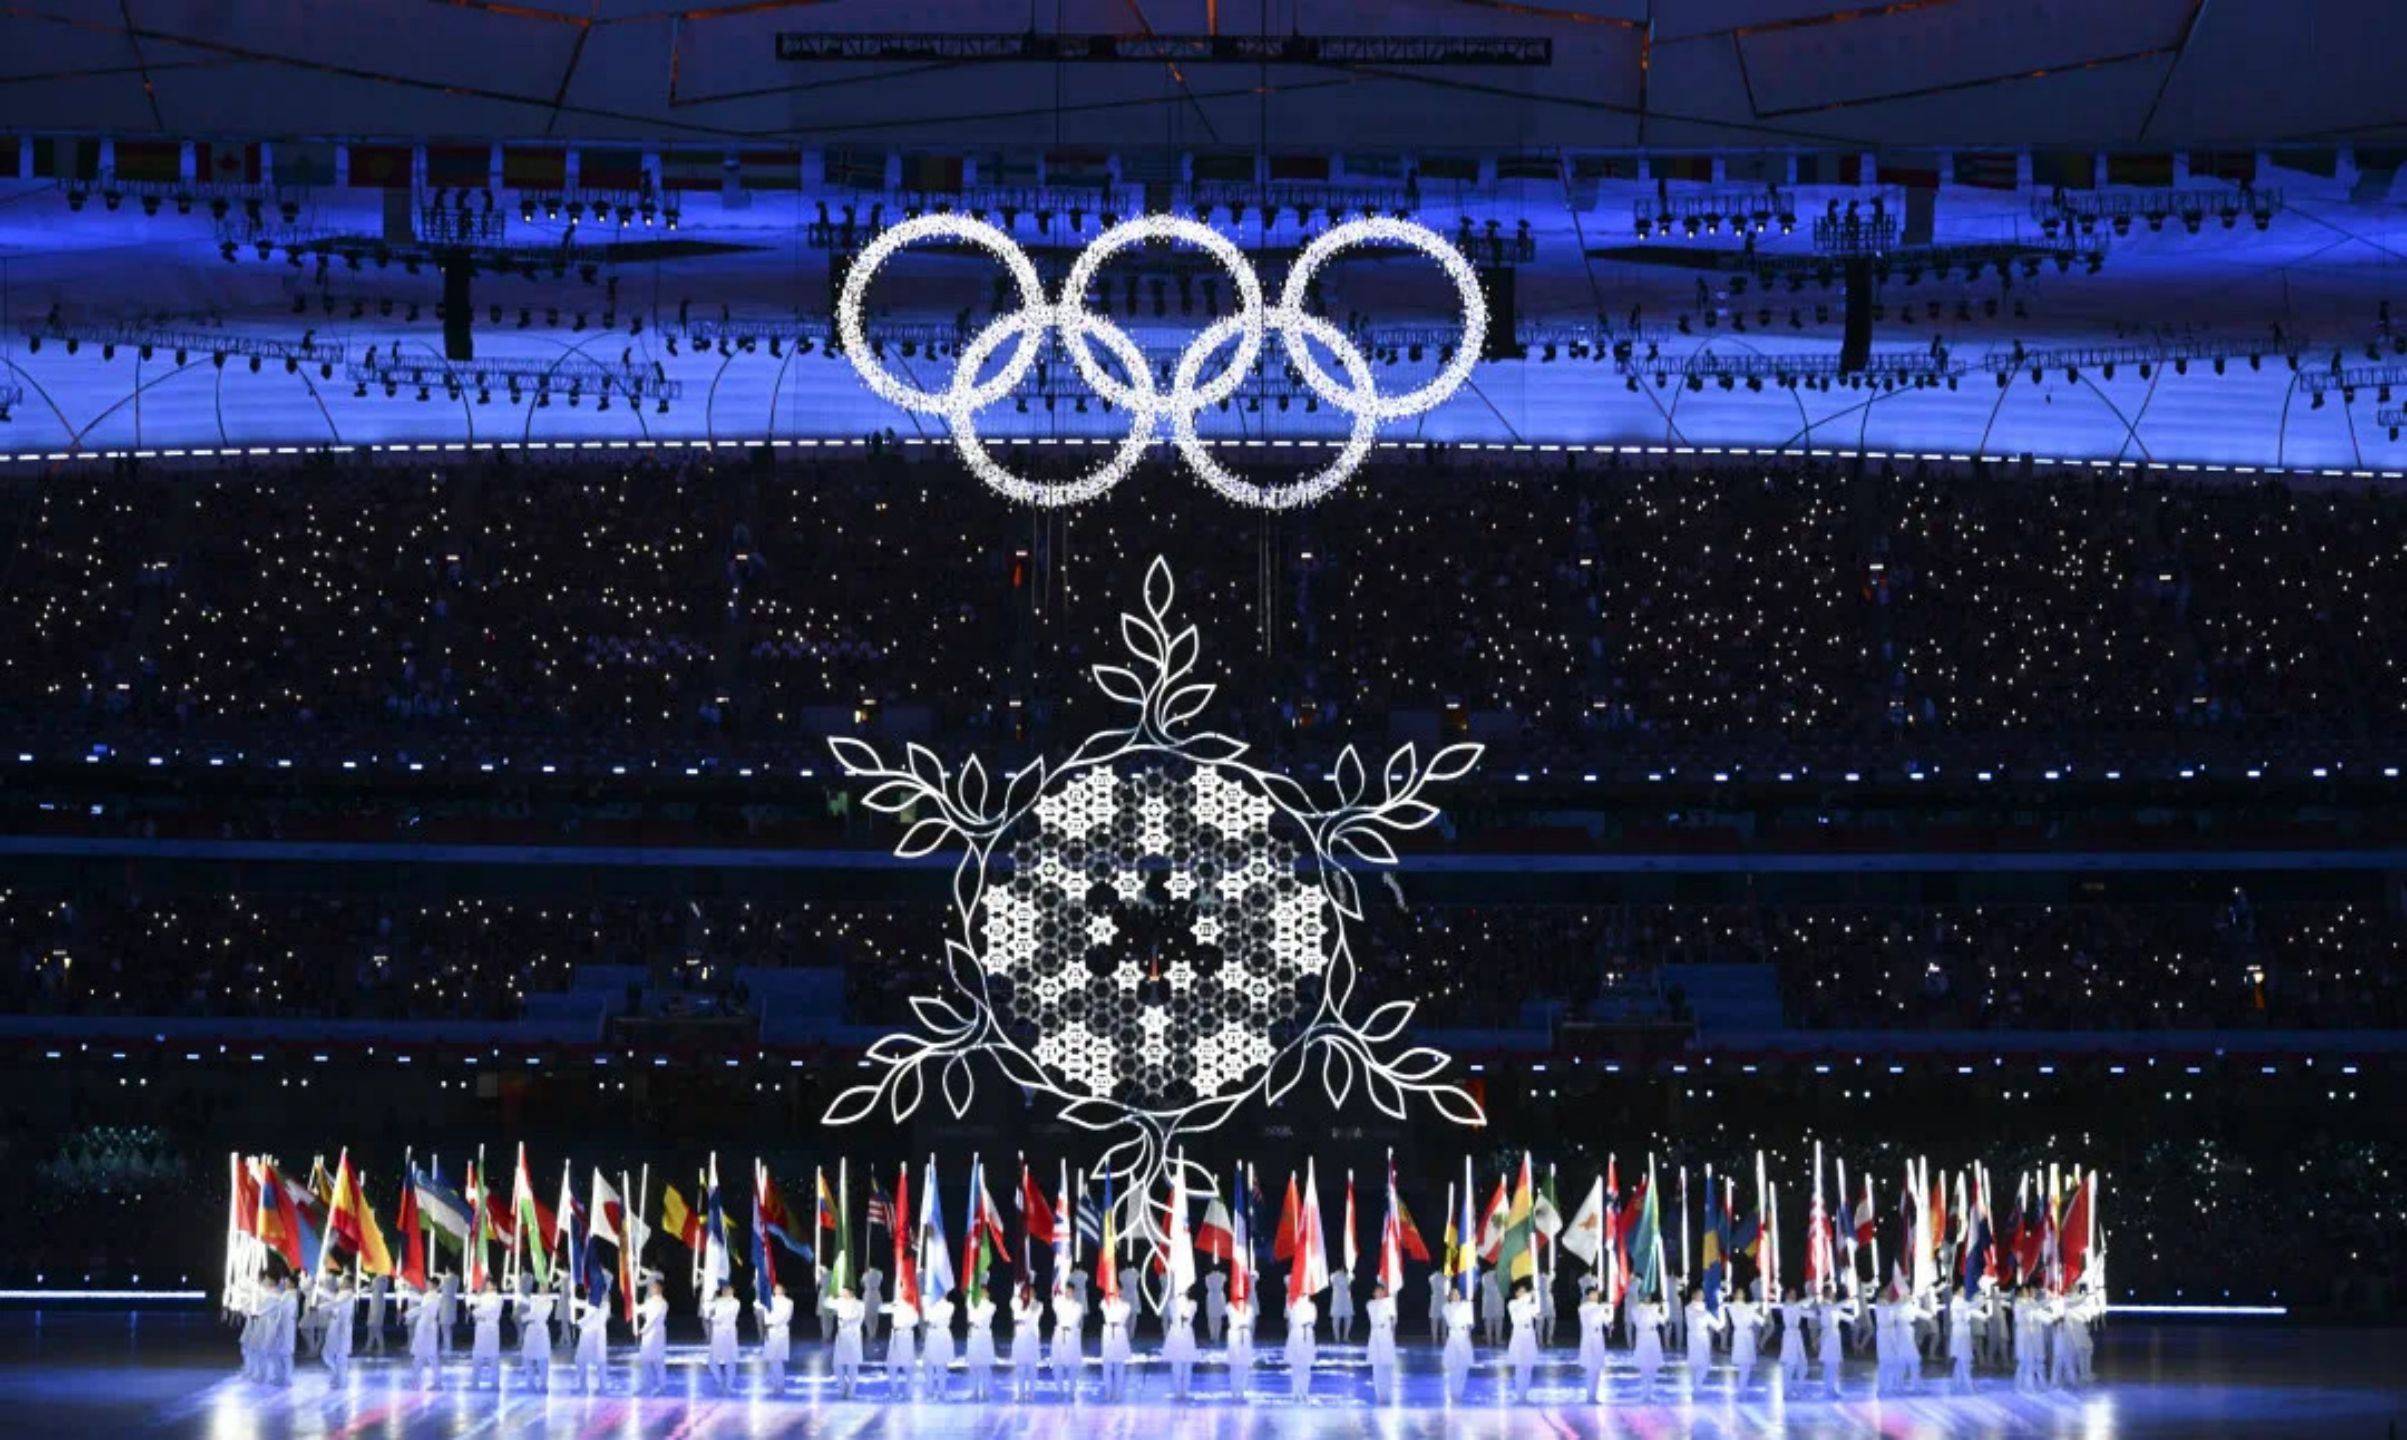 《我和你》过渡为本届冬奥会主题歌《雪花》,奥林匹克主火炬也在歌声